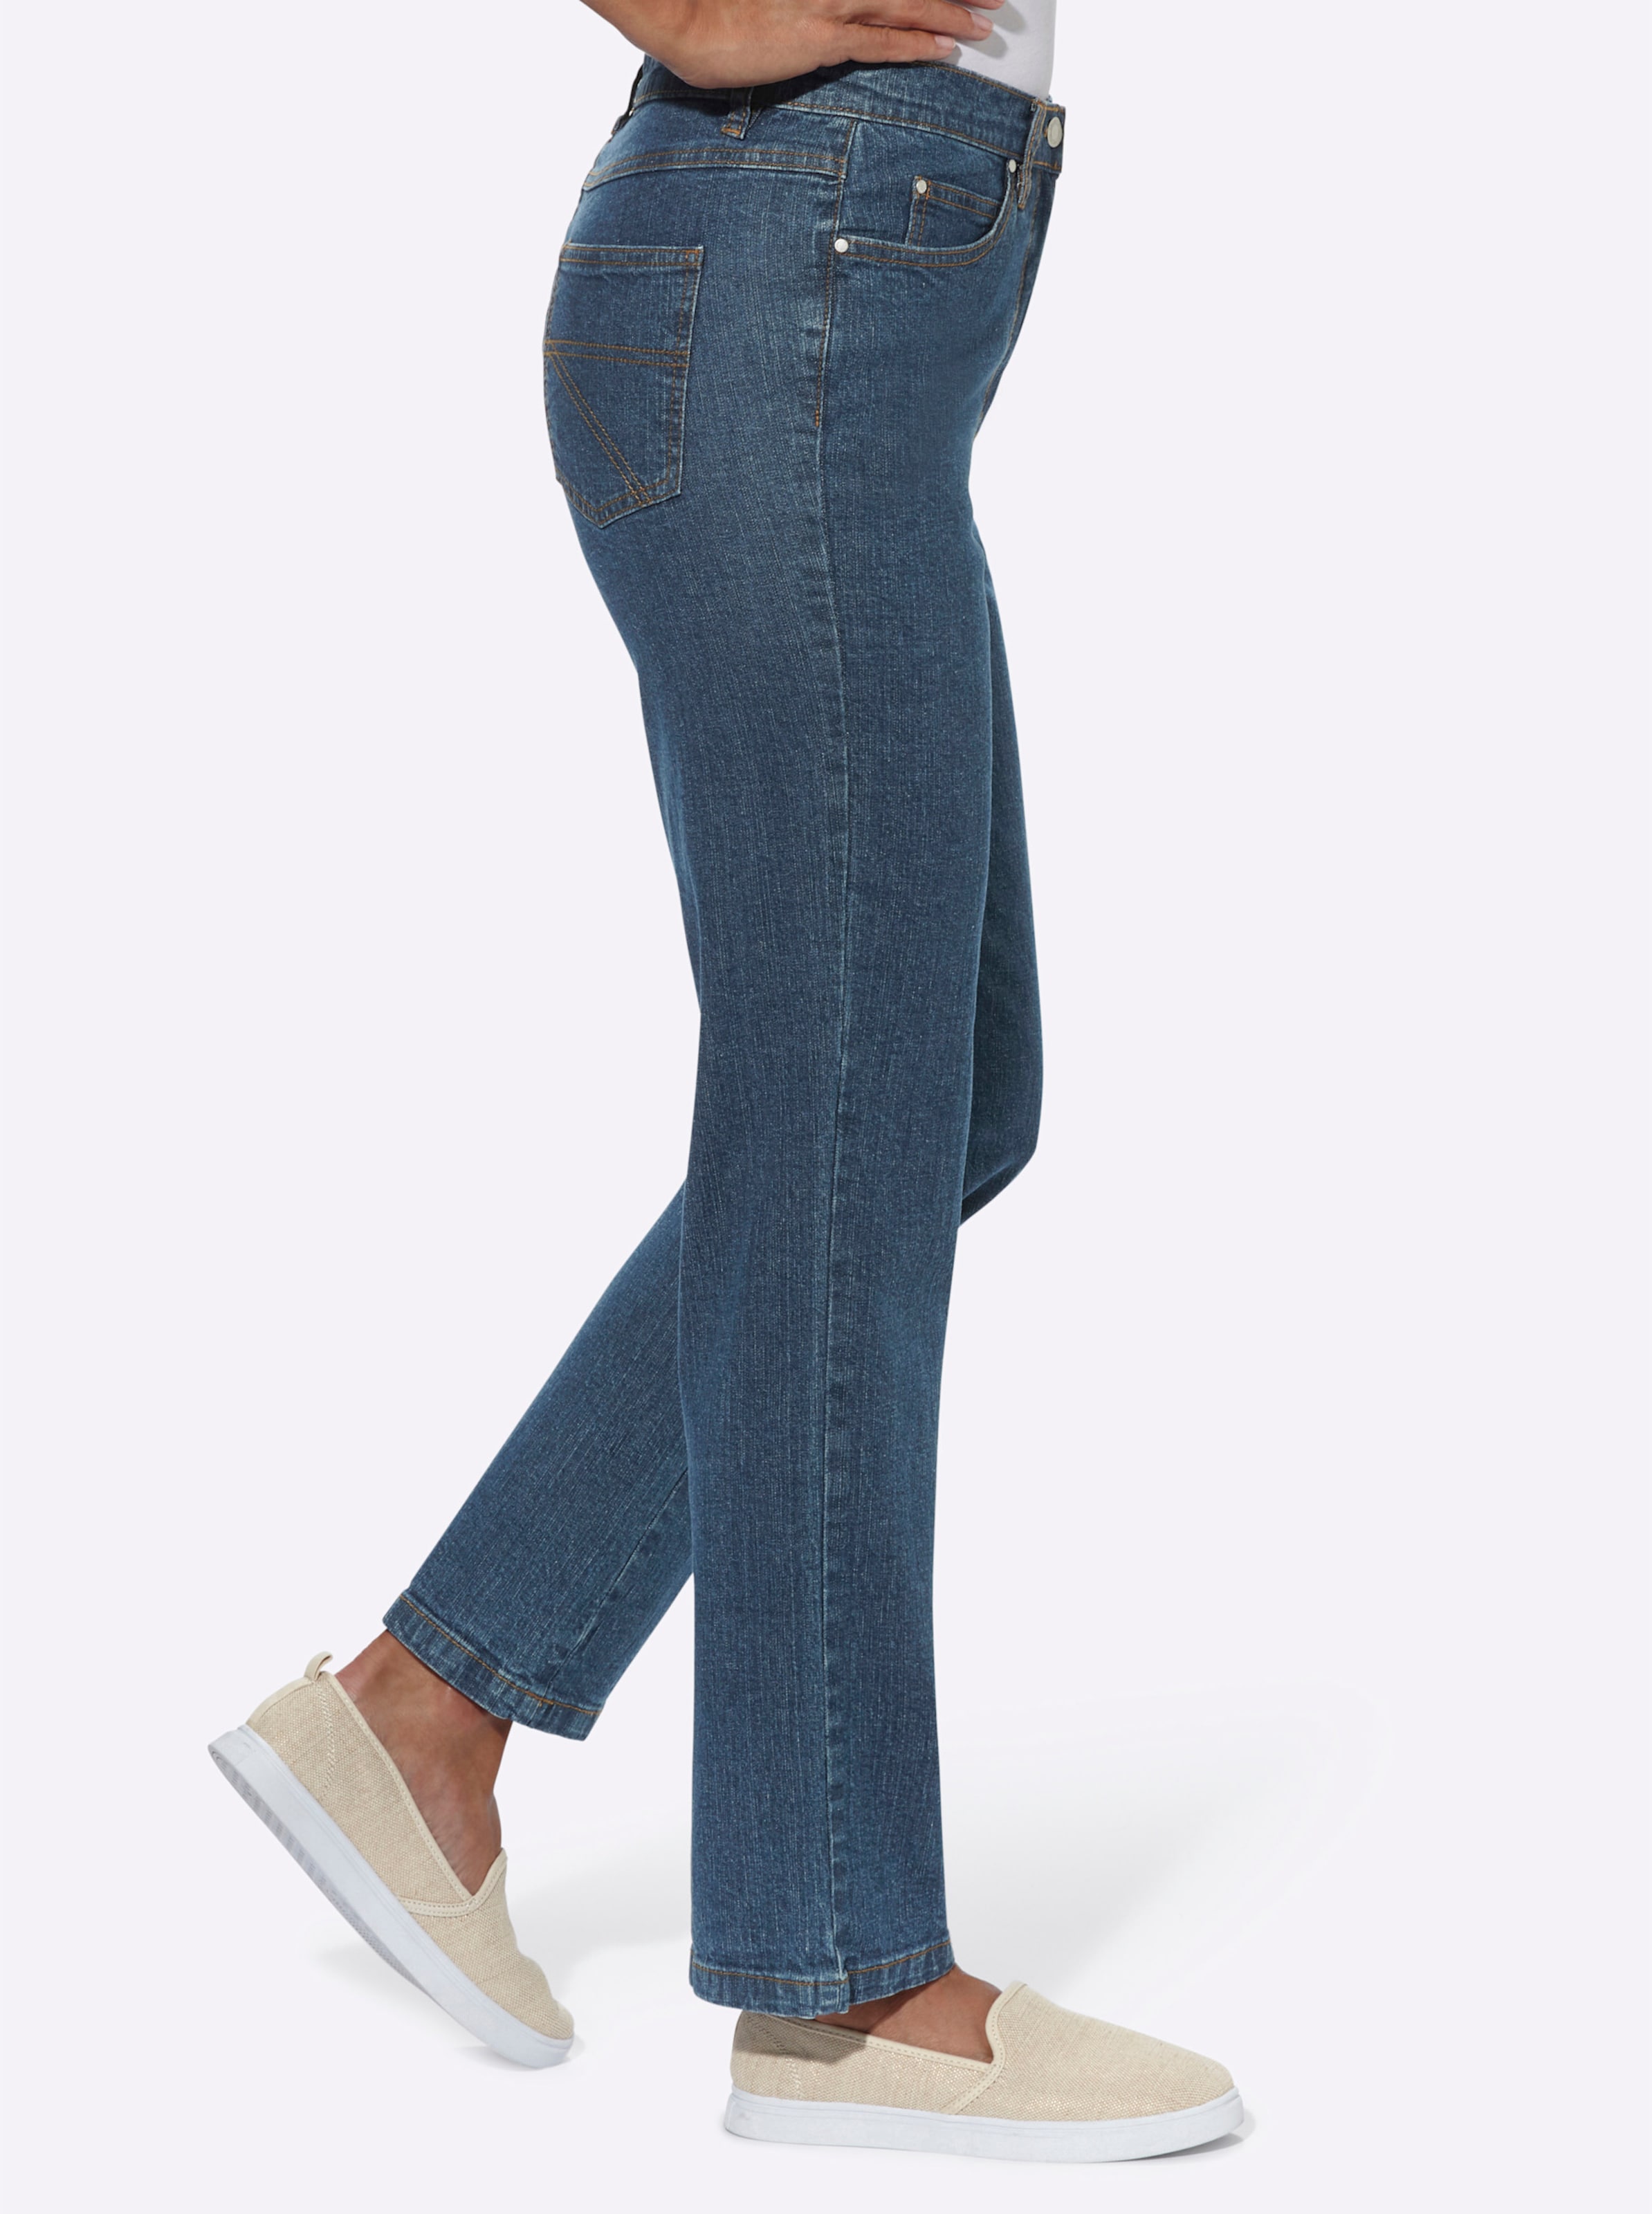 Was eine günstig Kaufen-5-Pocket-Jeans in blue-stone-washed von heine. 5-Pocket-Jeans in blue-stone-washed von heine <![CDATA[Sitzt super dank Baumwoll-Stretch: Klassische 5-Pocket Jeans mit stiltypischen Kontrastnähten. Rückwärtiger Sattel für die optimale Passform. Fußwei